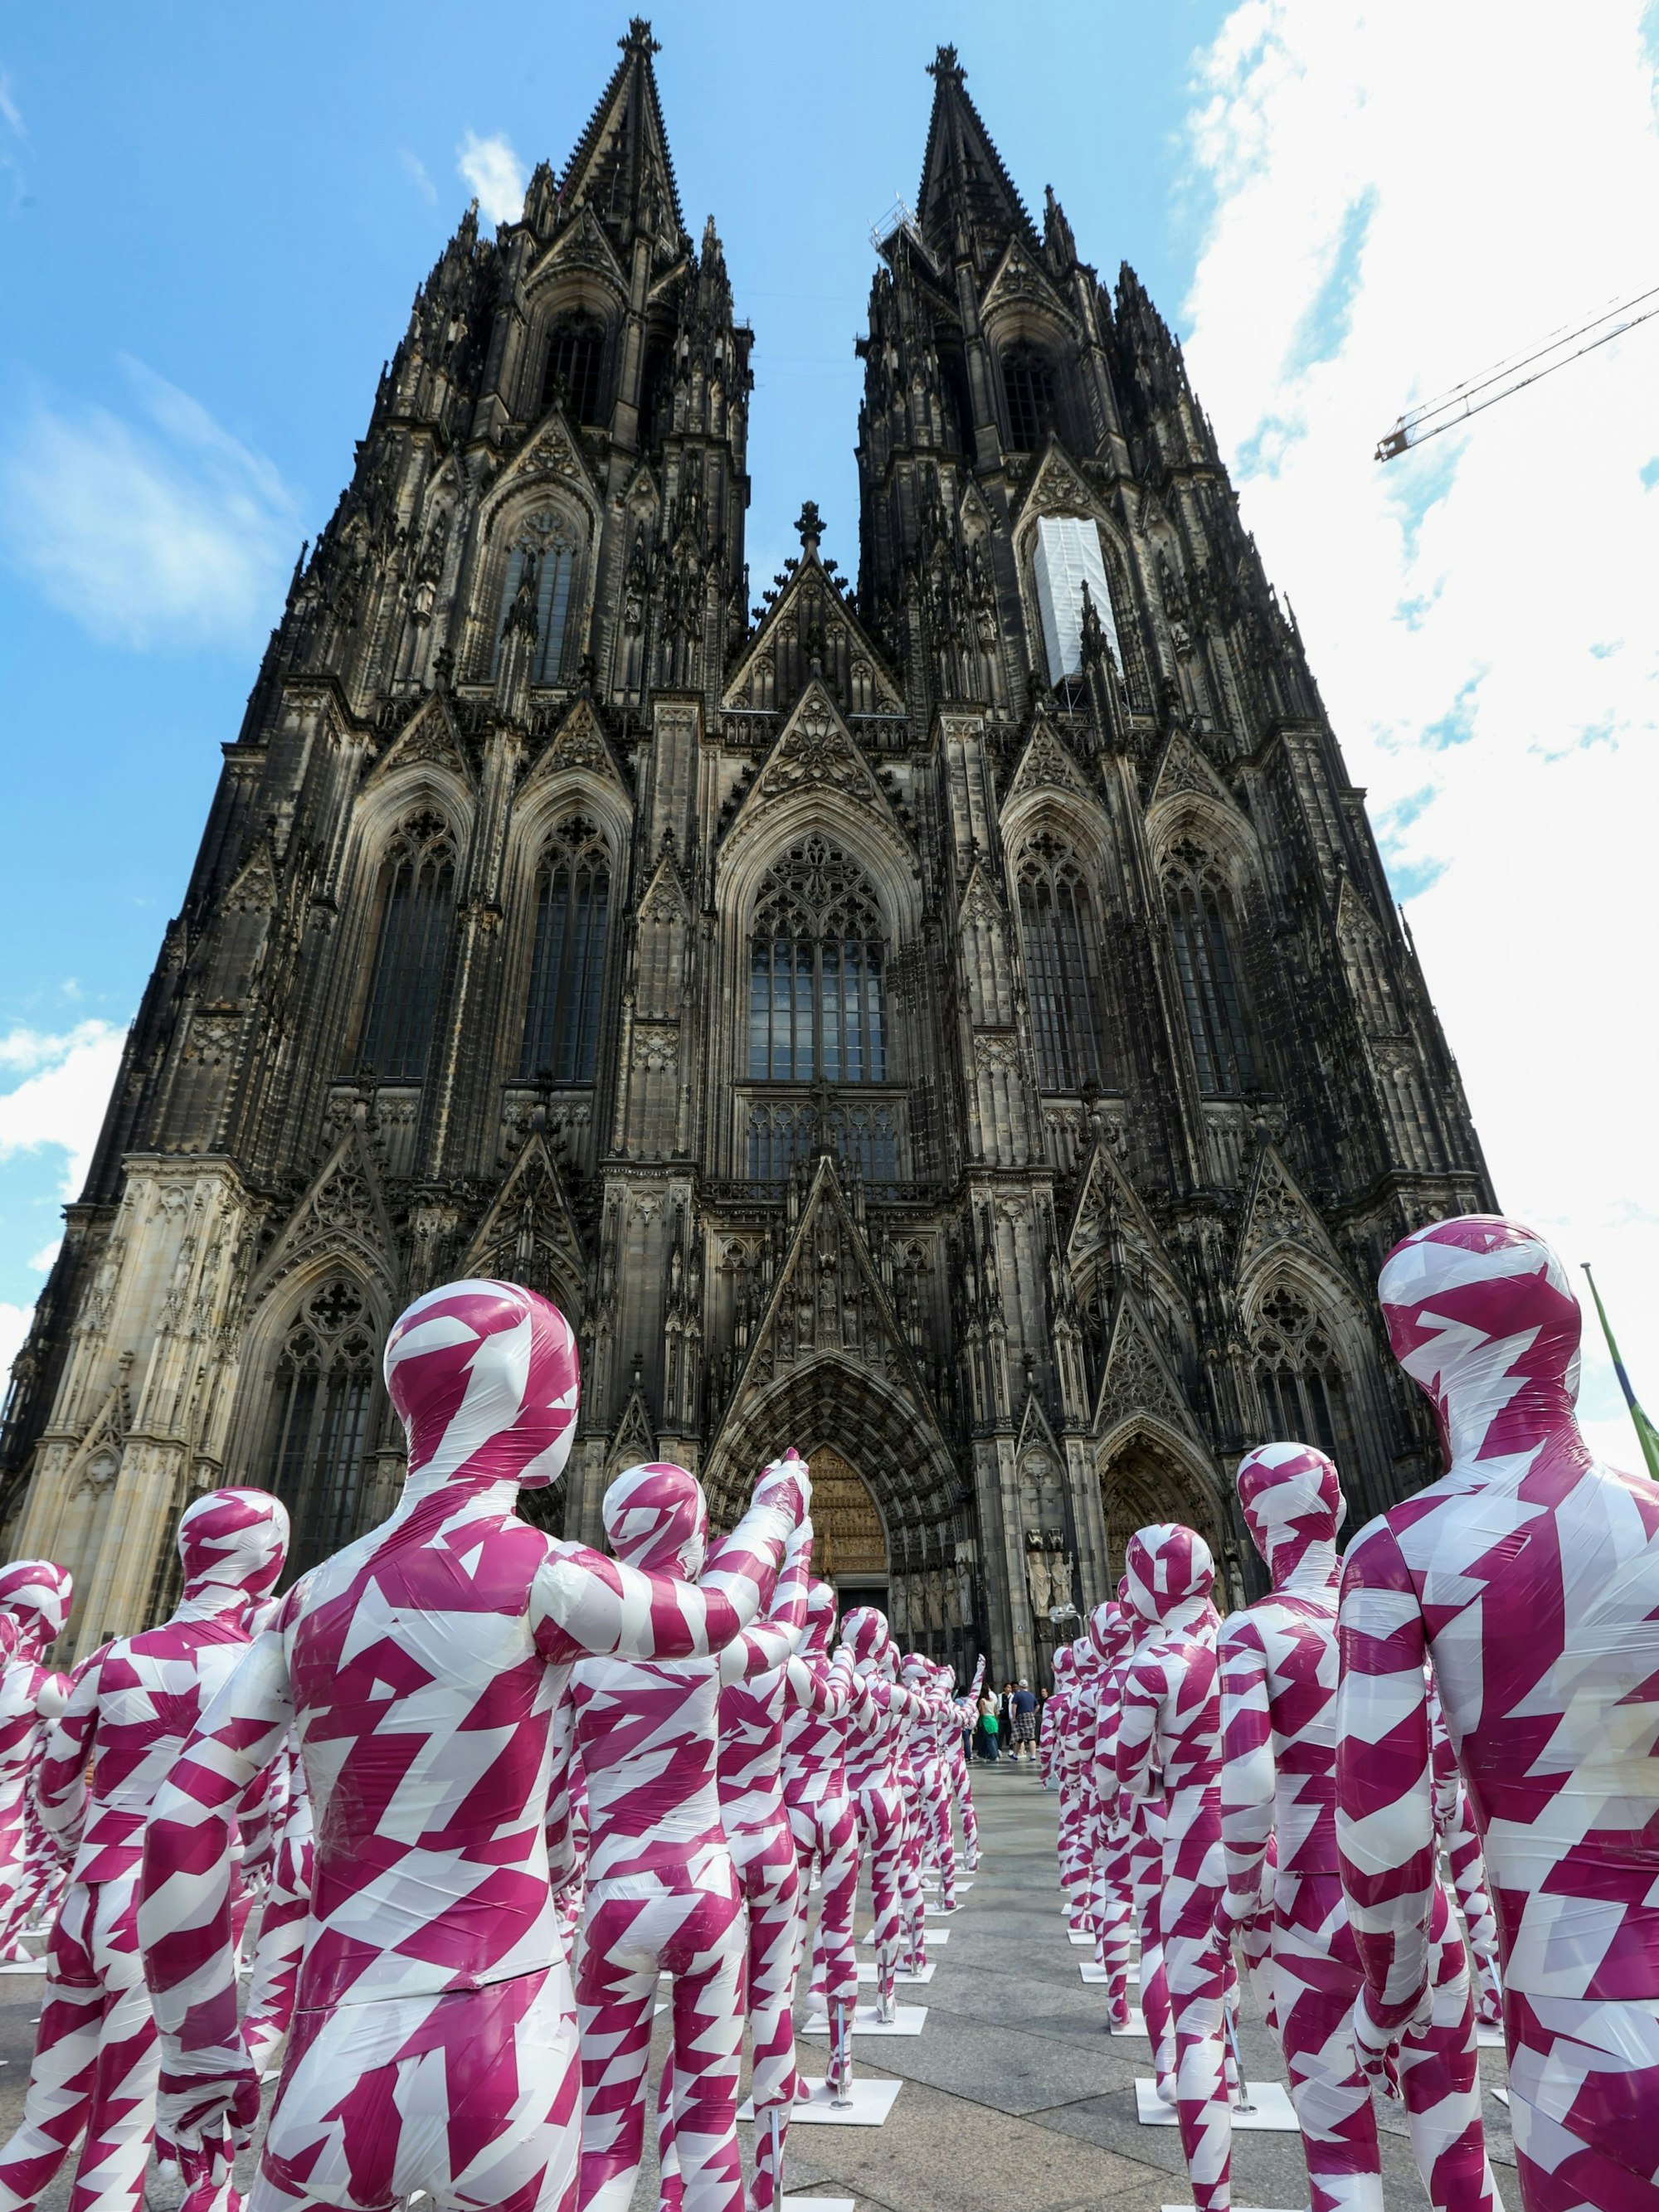 333 Kinderfiguren stehen als Mahnwache vor dem Kölner Dom. Die mit purpur-weiß farbigem Flatterband umhüllten Figuren zeigen mit dem Finger auf den Dom.